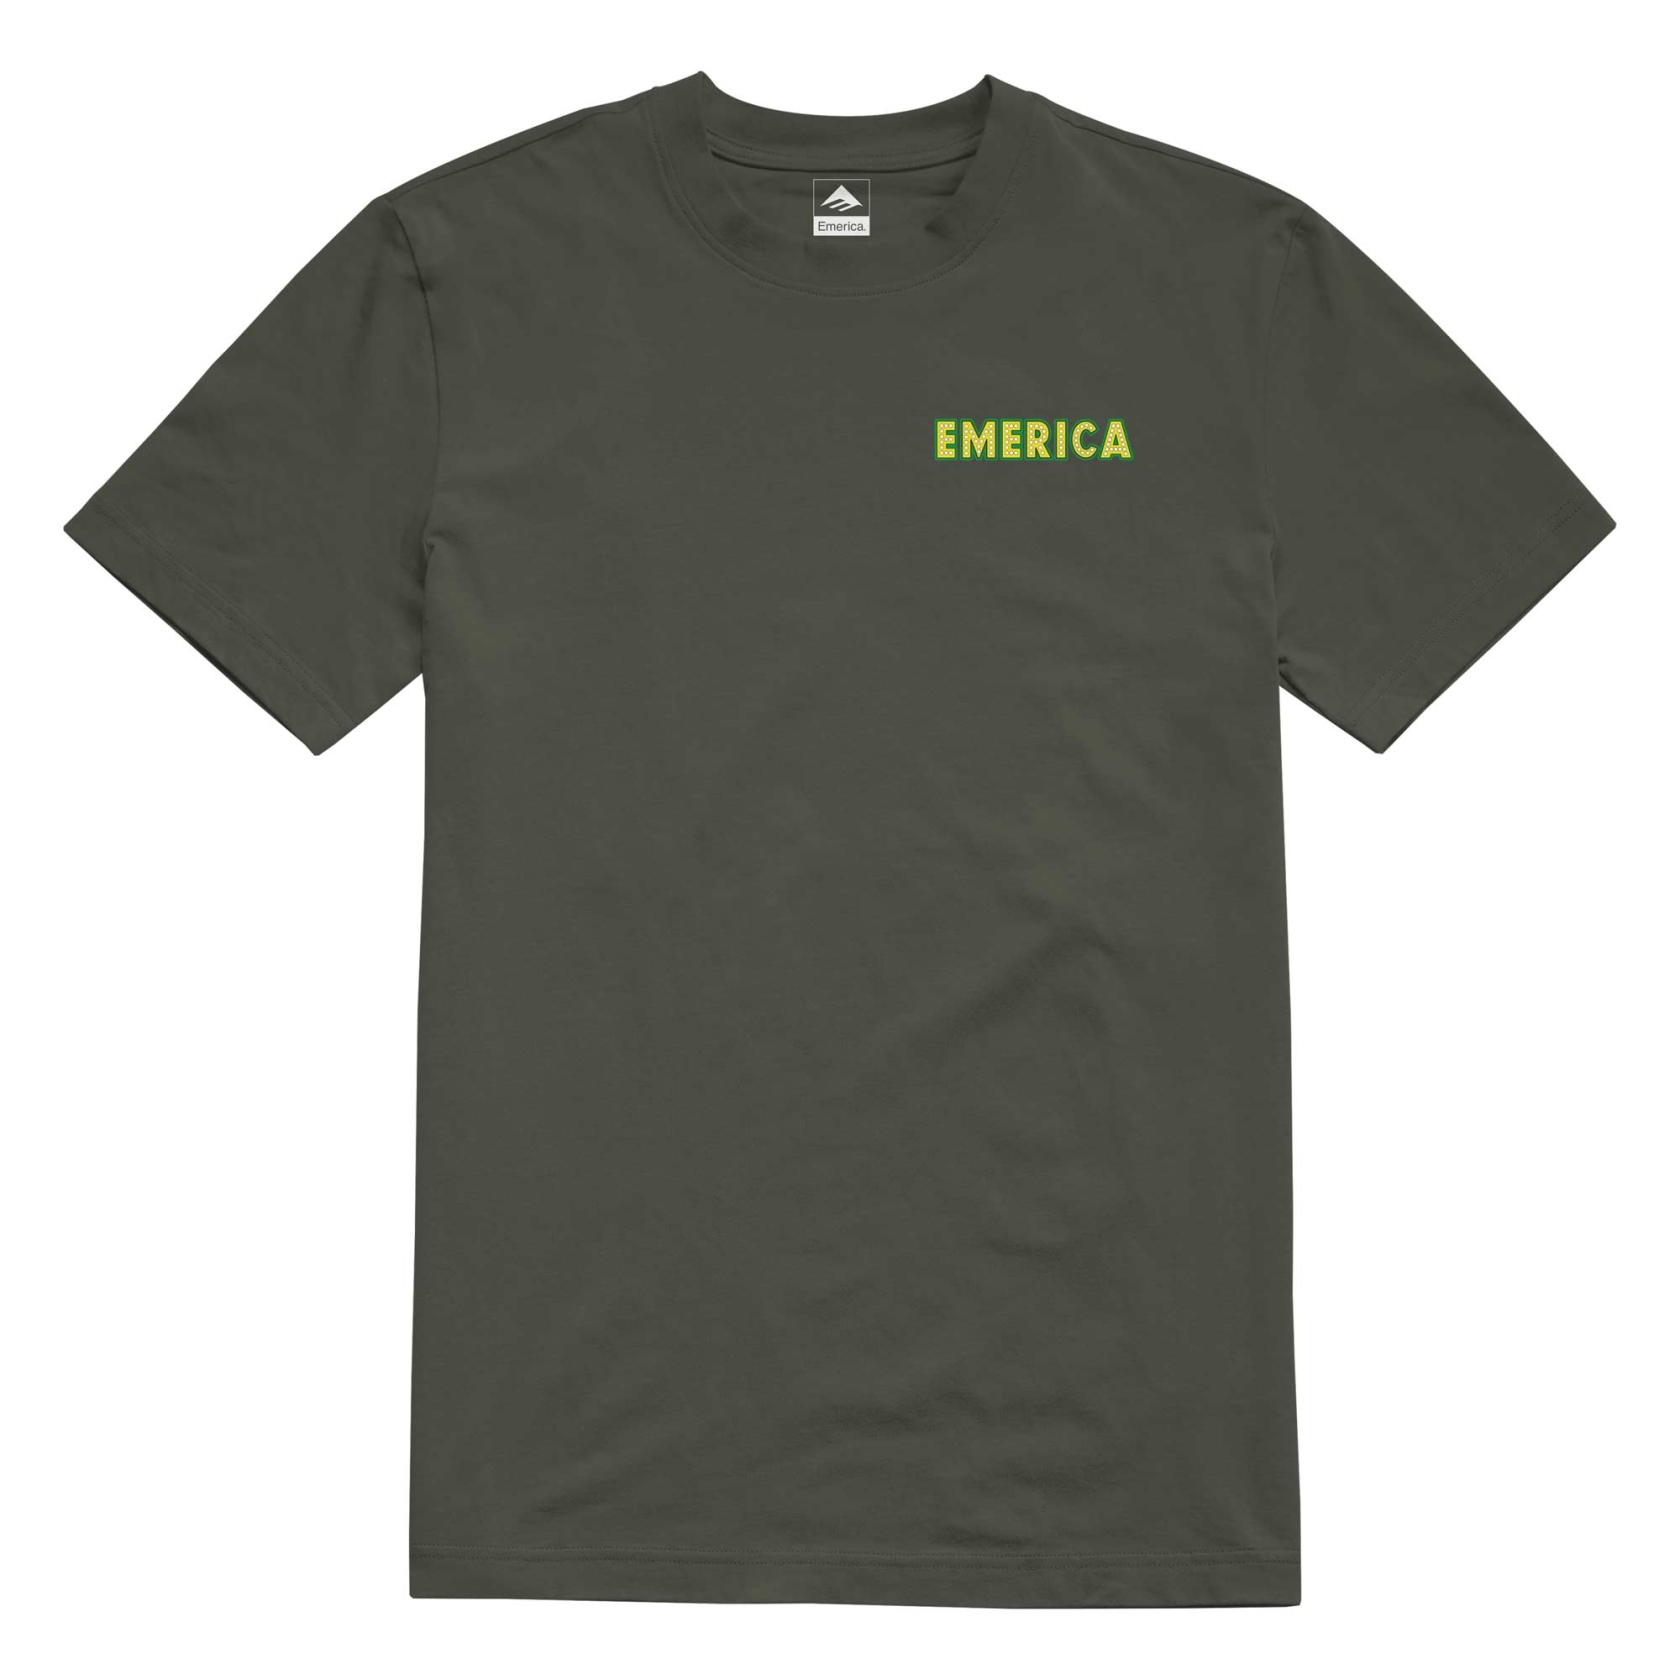 EMERICA T-Shirt SHAKE JUNT PURE LIGHTS military